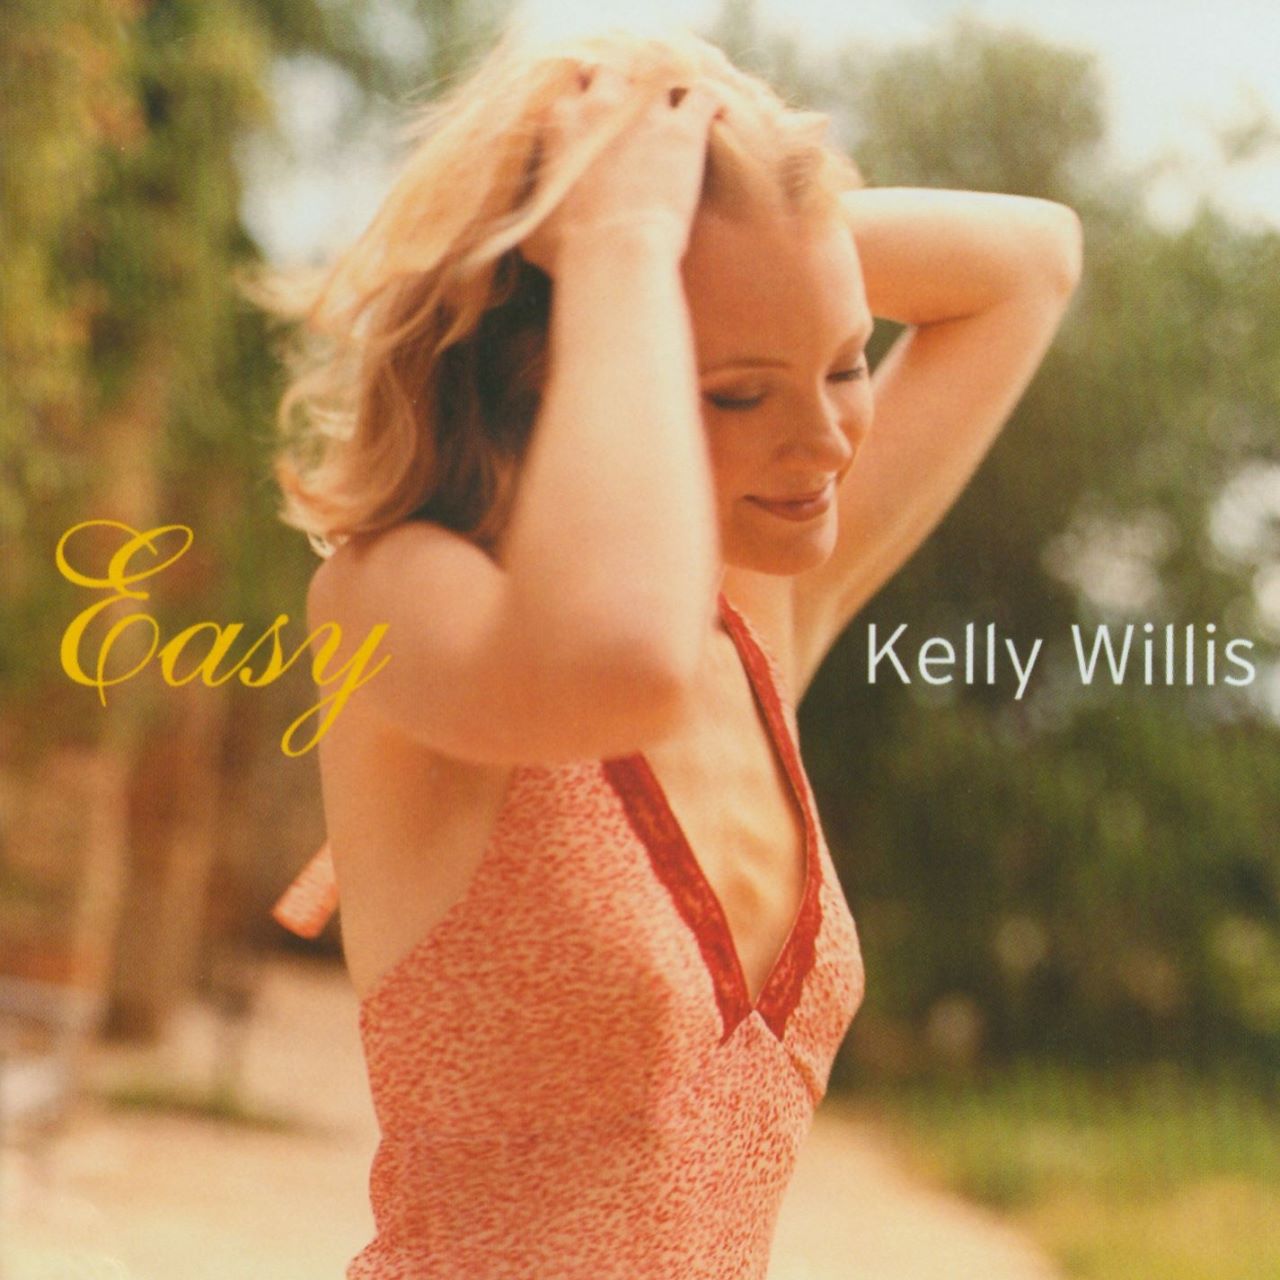 Kelly Willis - Easy cover album